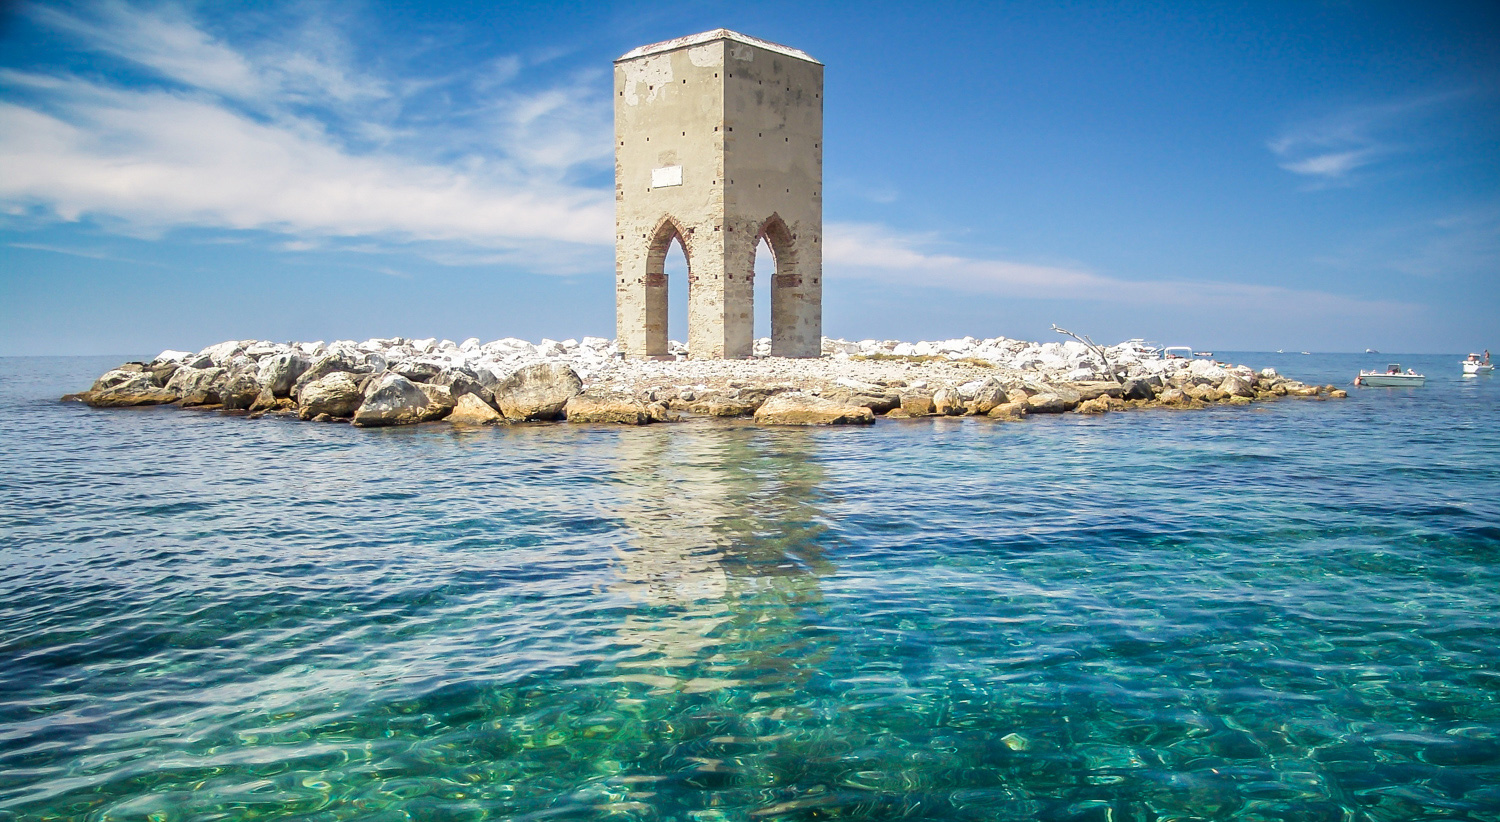 La torre della Meloria, costruzione settecentesca che sorge isolata nello specchio di mare che nel 1284 fu teatro della celebre battaglia tra pisani e genovesi